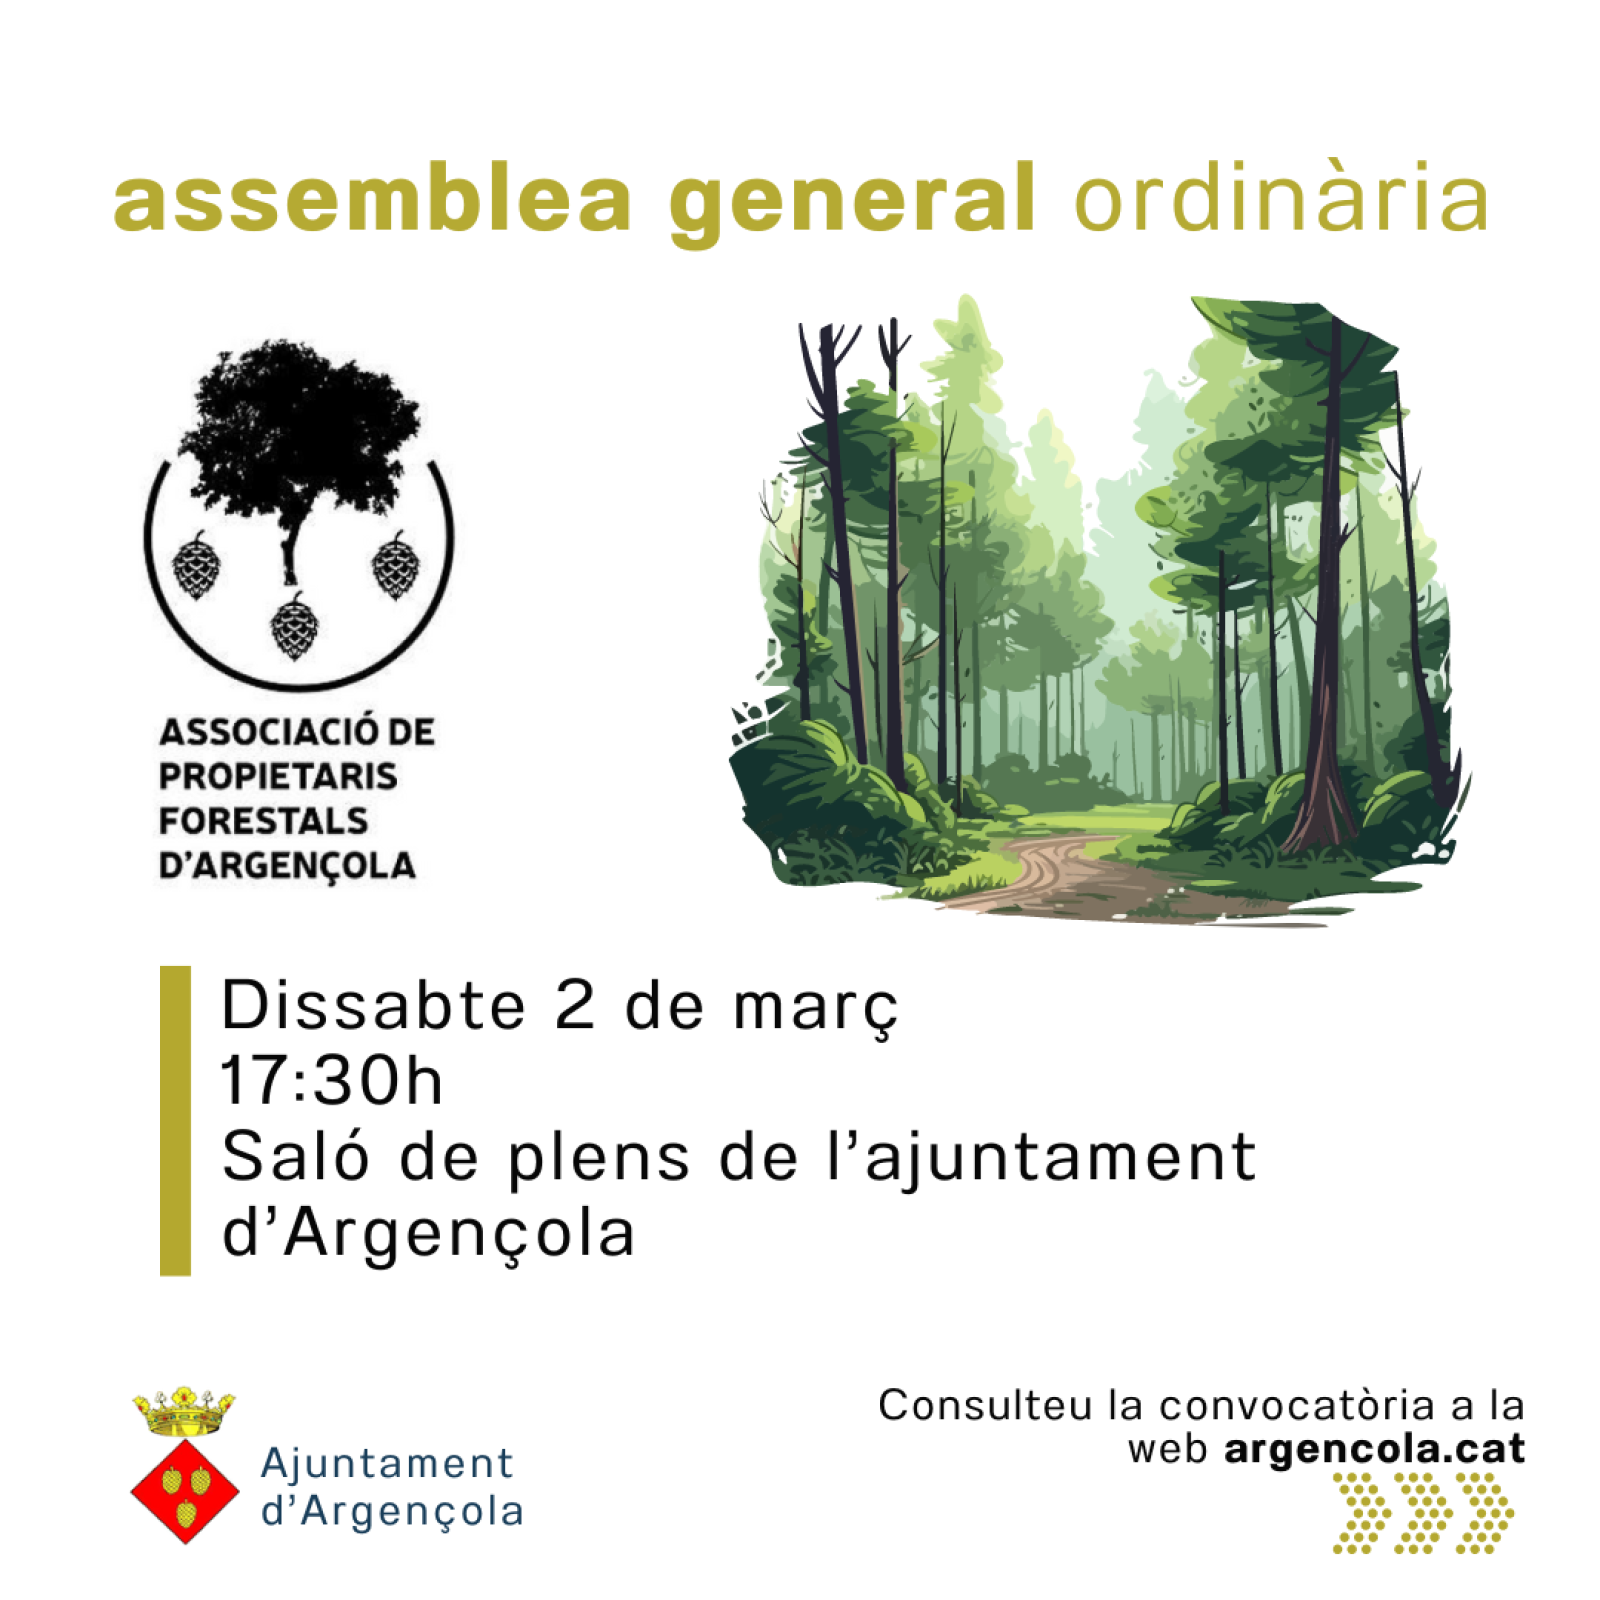 Aquest dissabte, assemblea general ordinària de l’Associació de Propietaris Forestals d’Argençola